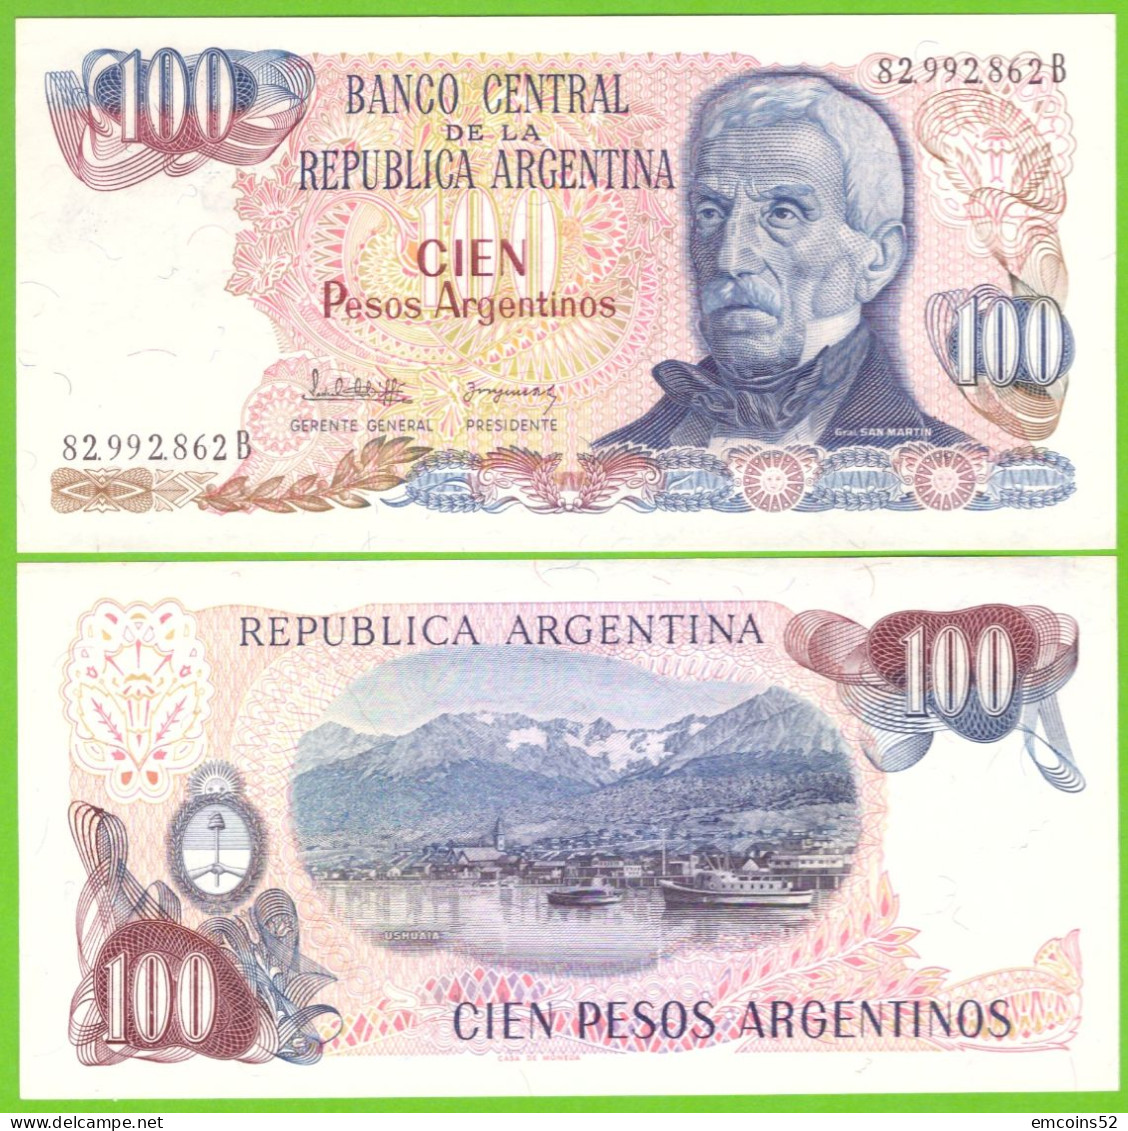 ARGENTINA 100 PESOS ND 1983/1985 P-315a(1) UNC - Argentina